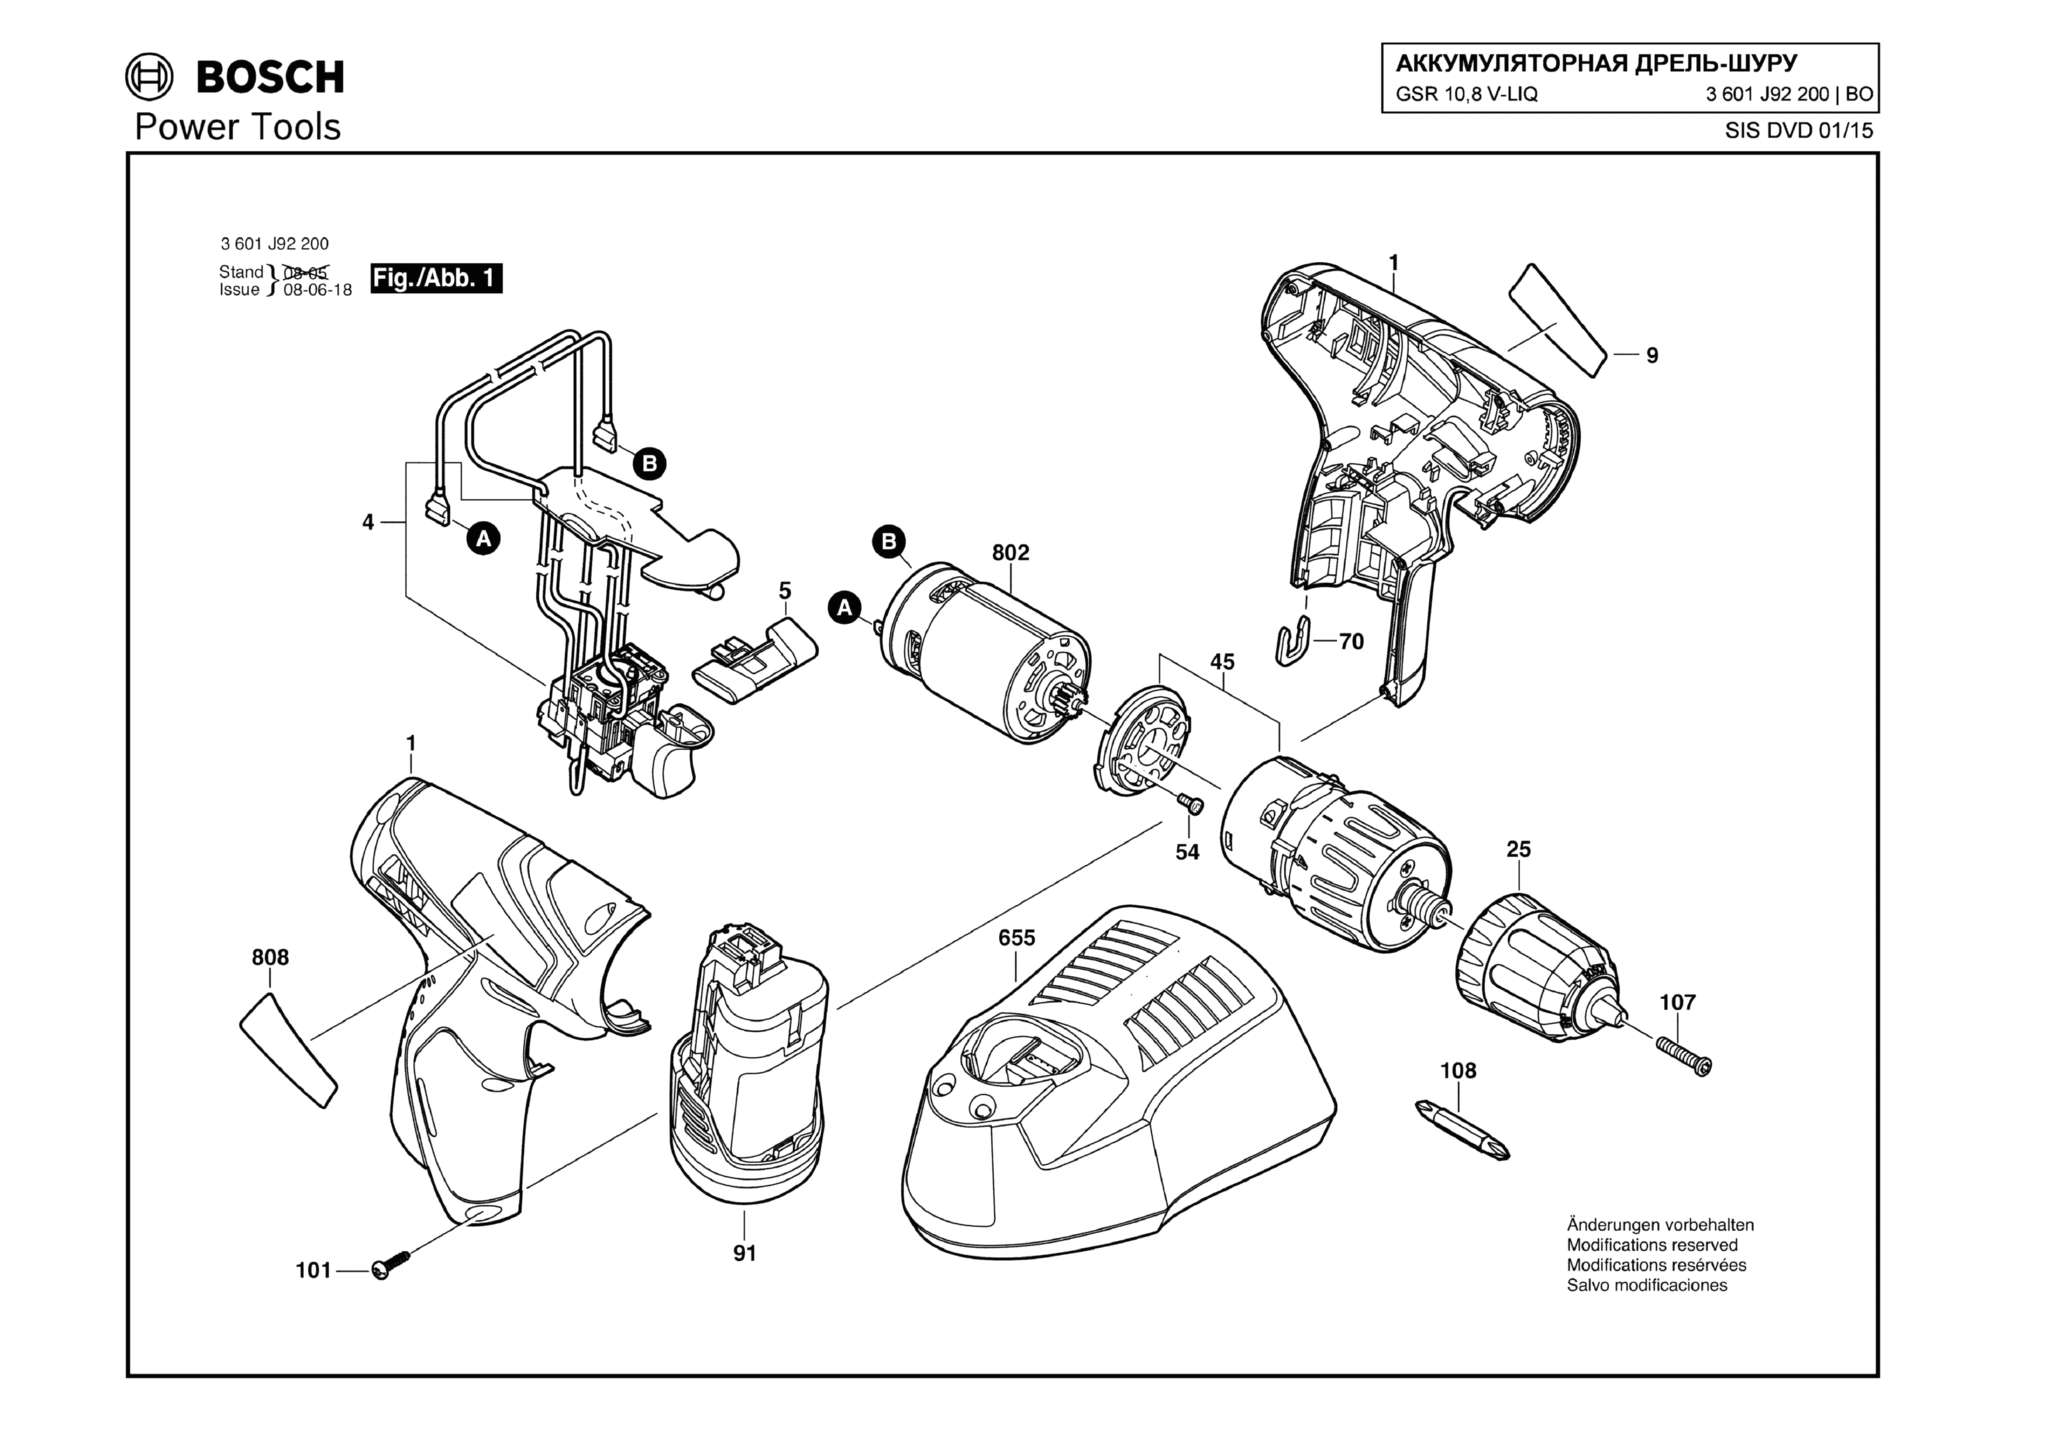 Запчасти, схема и деталировка Bosch GSR 10,8 V-LIQ (ТИП 3601J92200)